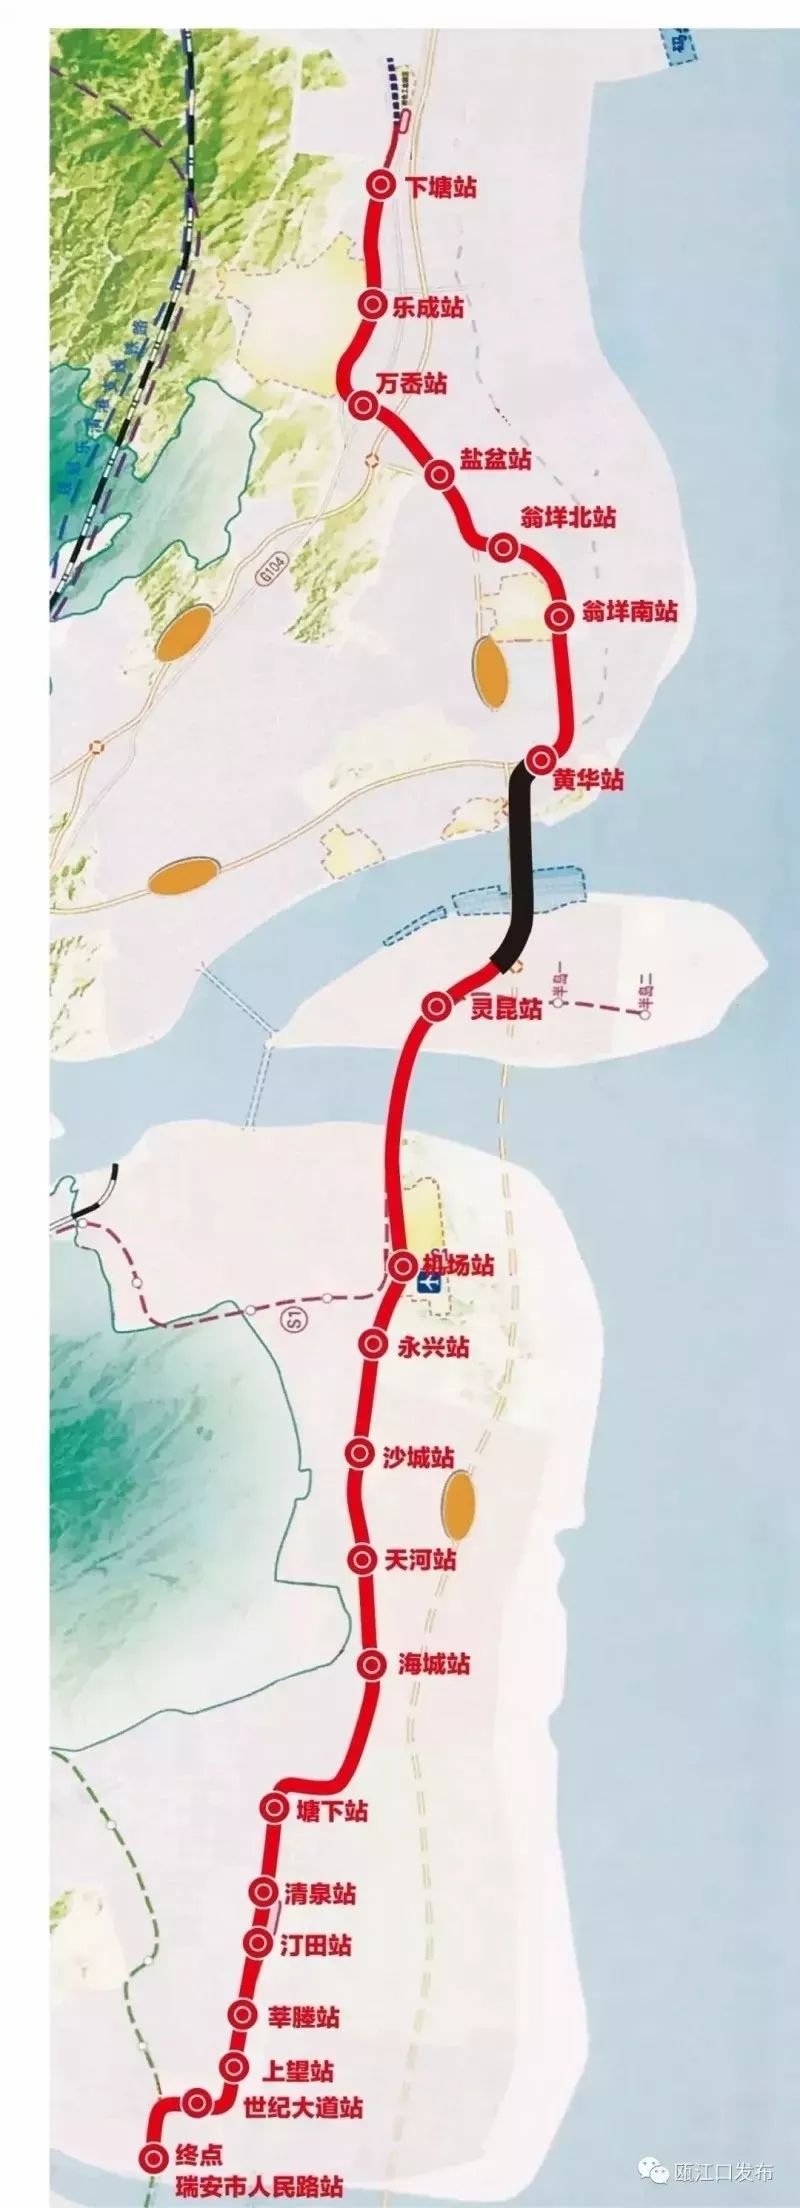 温州轻轨s1线10月建成试运行s2线还会远吗